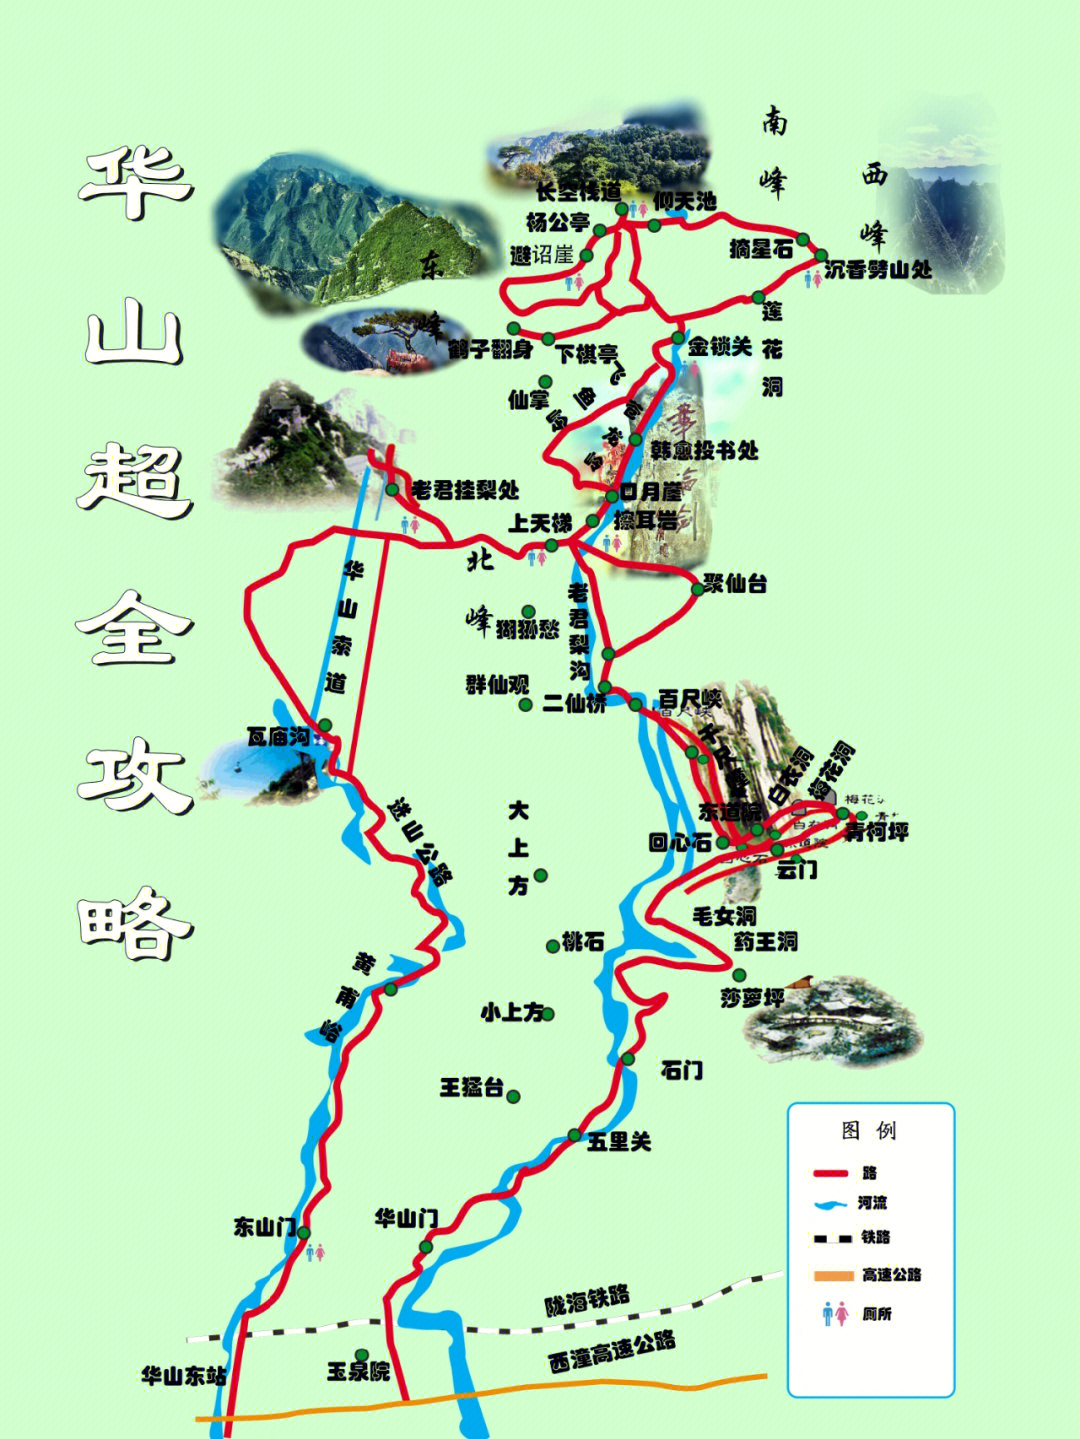 华山地图 立体图片